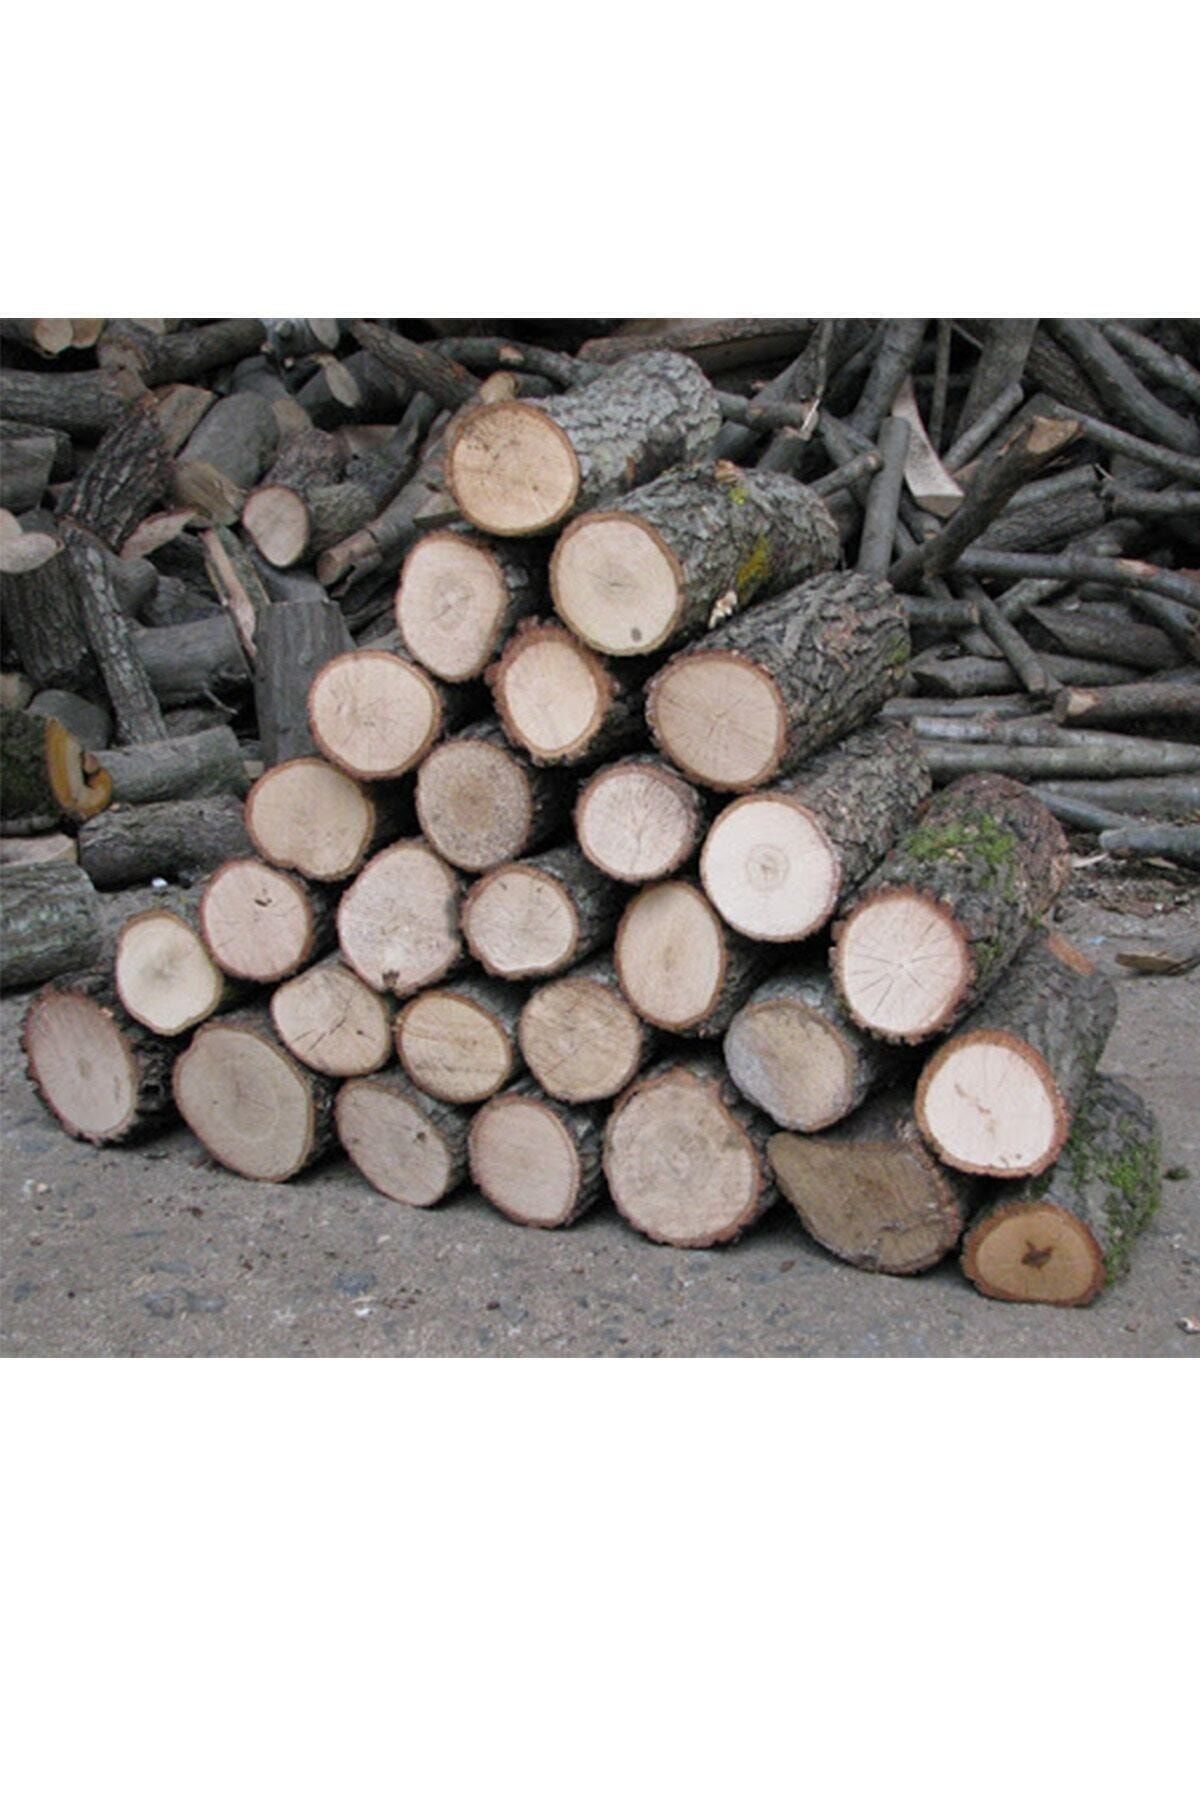 YüceGül Hakiki Meşe Şömine Odunu 25kg